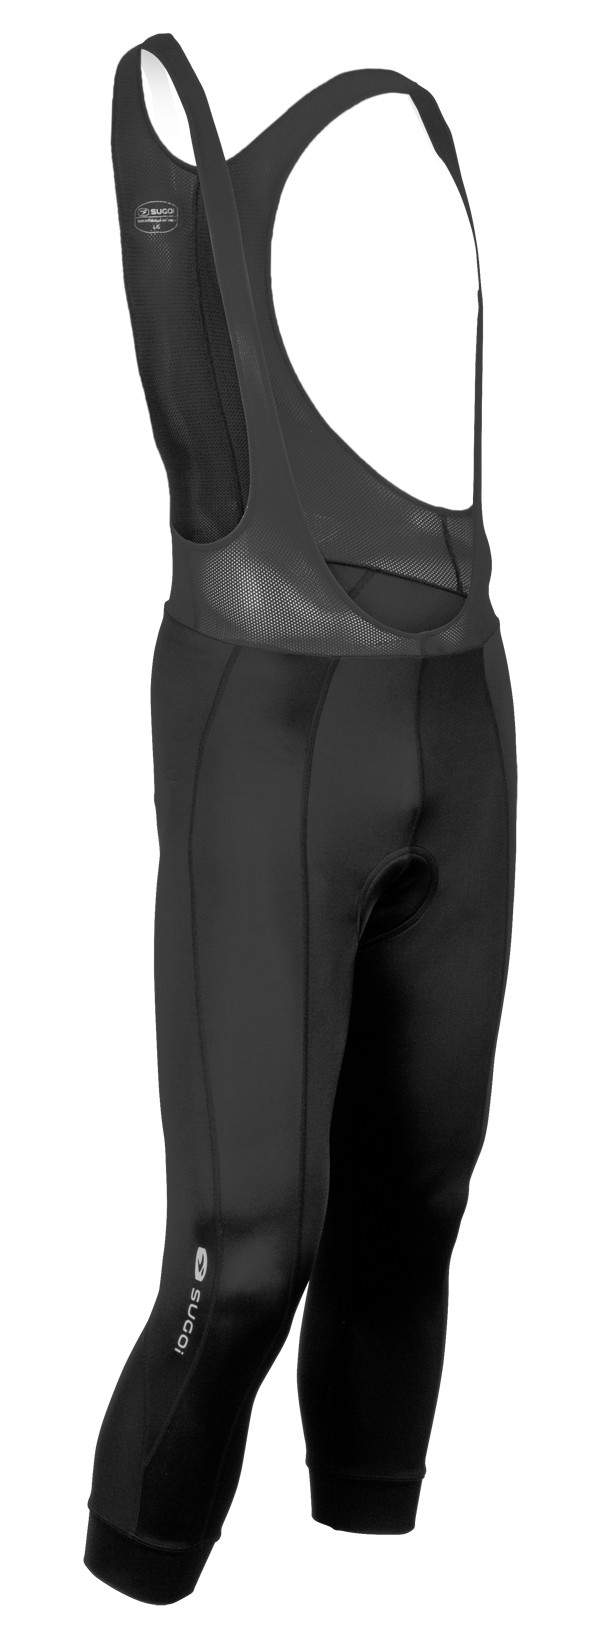 Рейтузы Sugoi TITAN TIGHT, мужские, black (черные), XL фото 